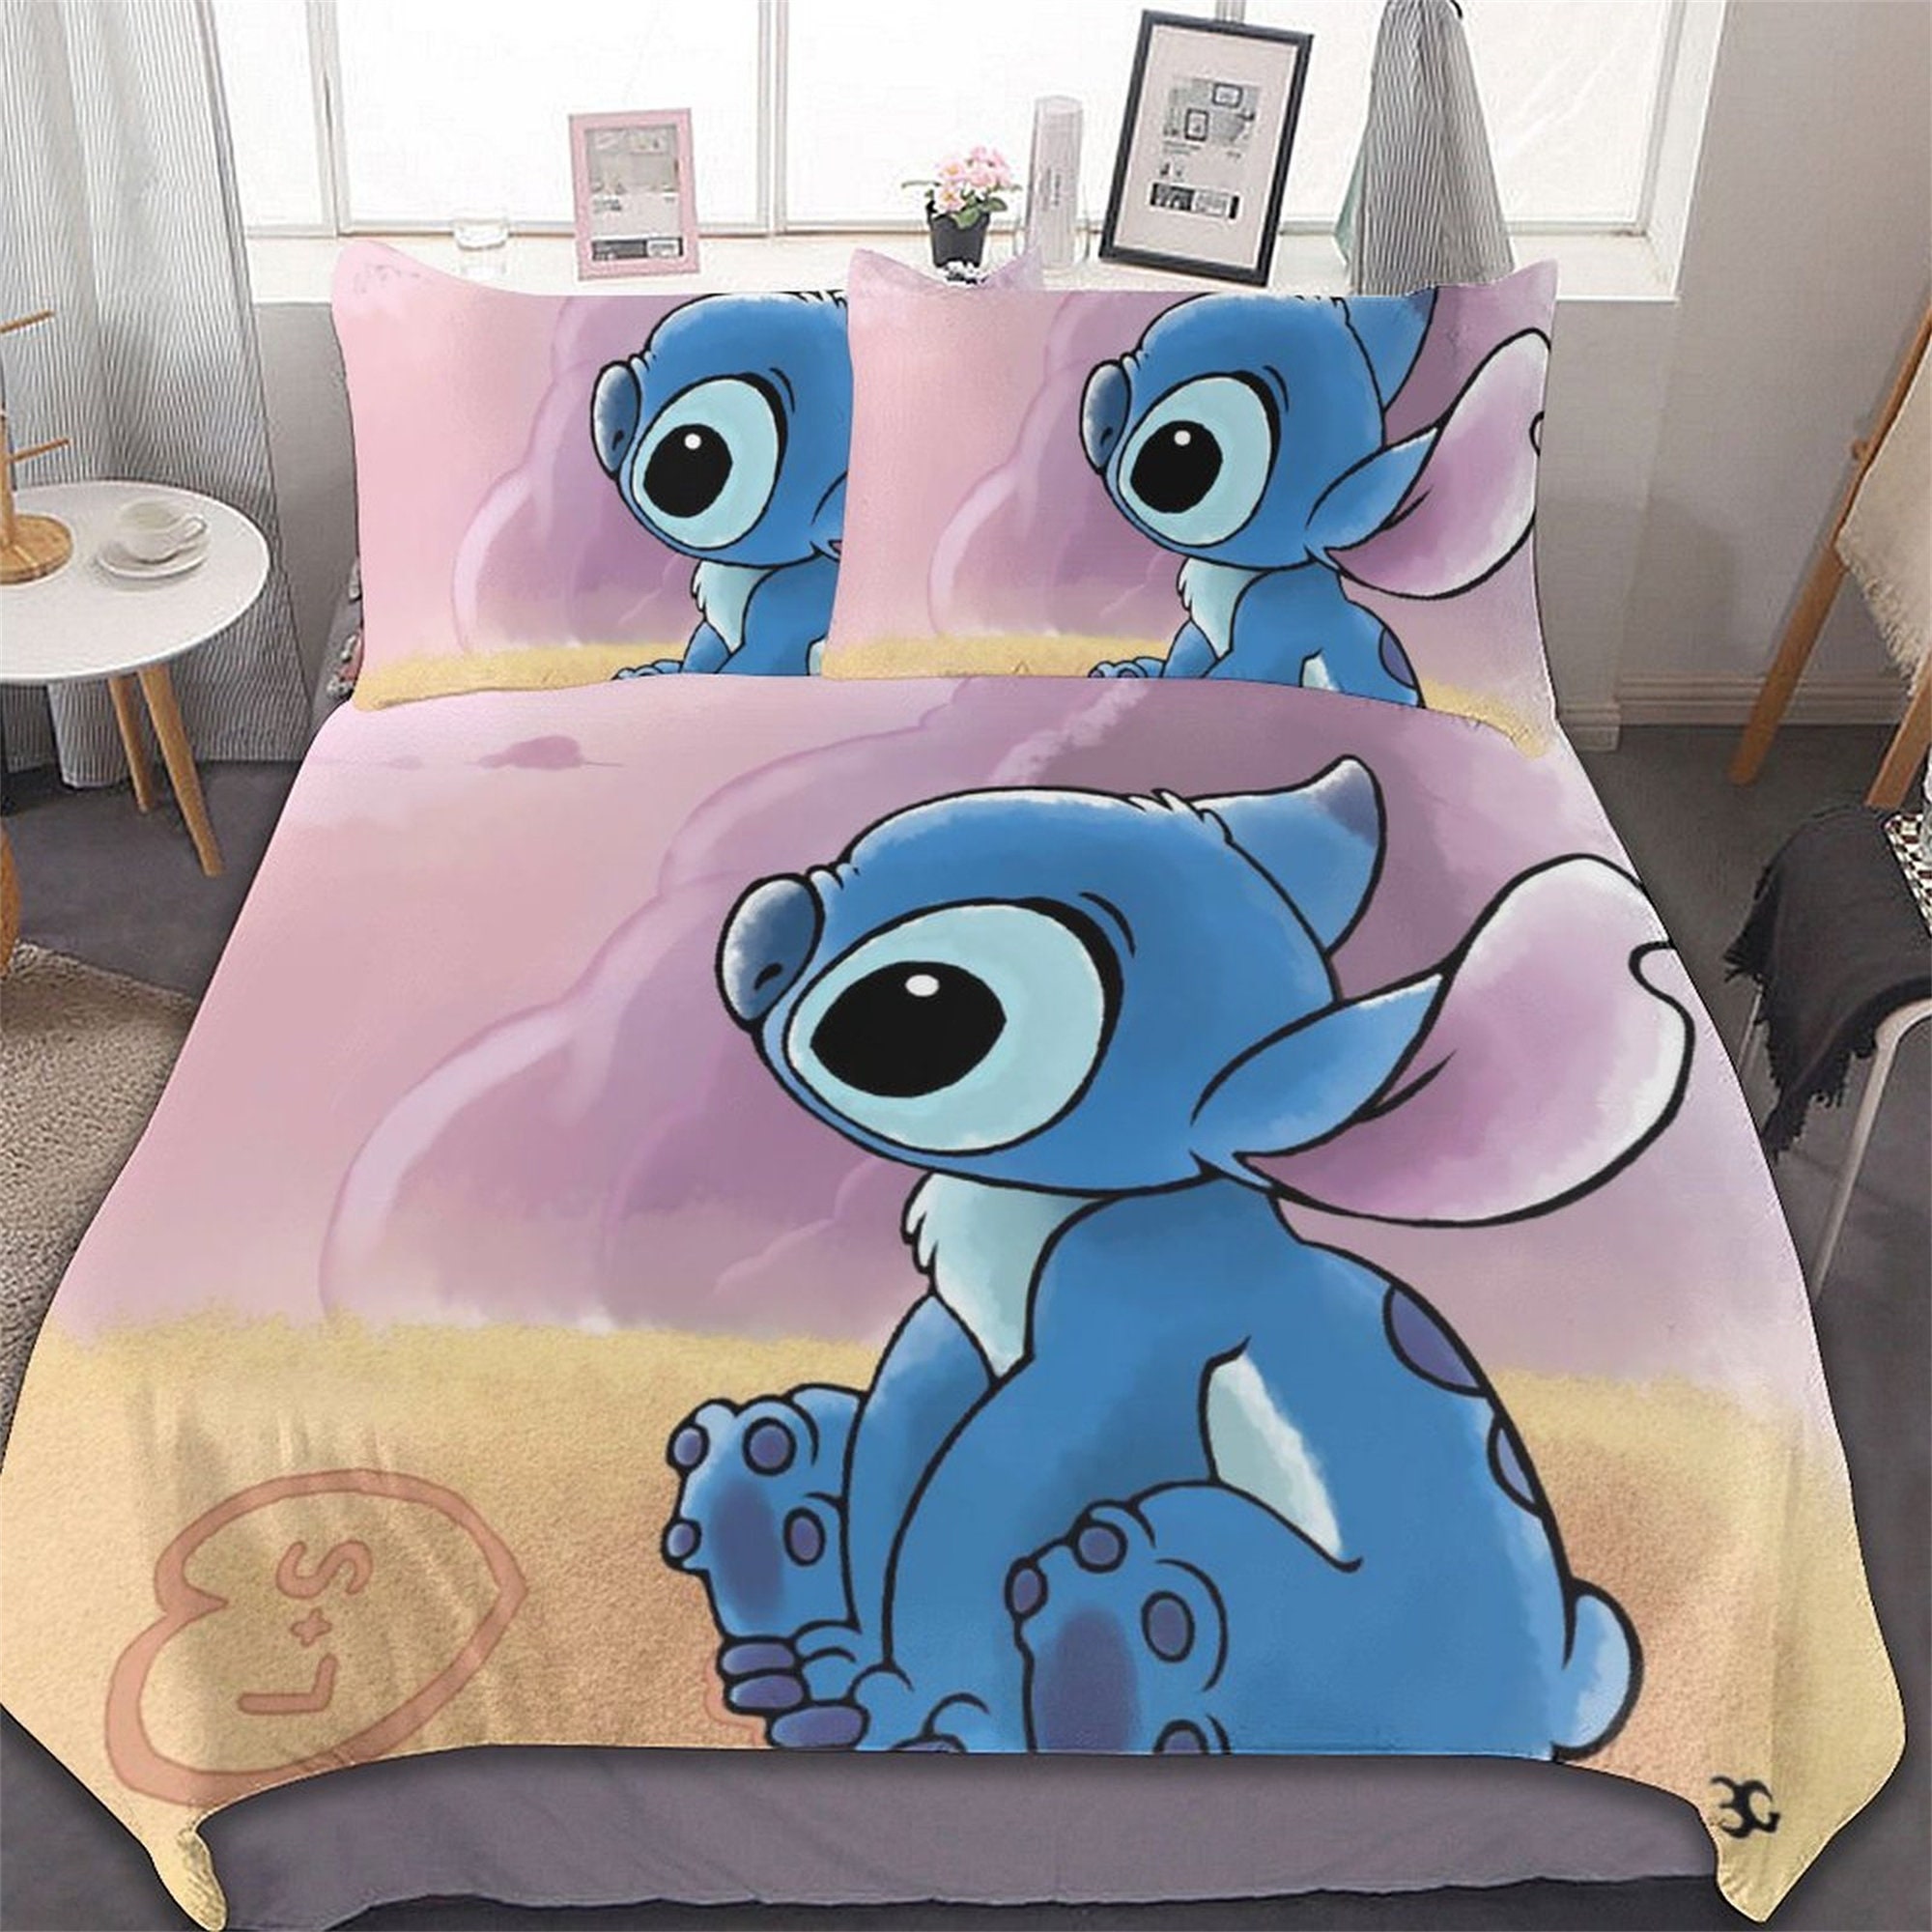 Parure de lit 'Stitch' de 'Disney' - 2 personnes